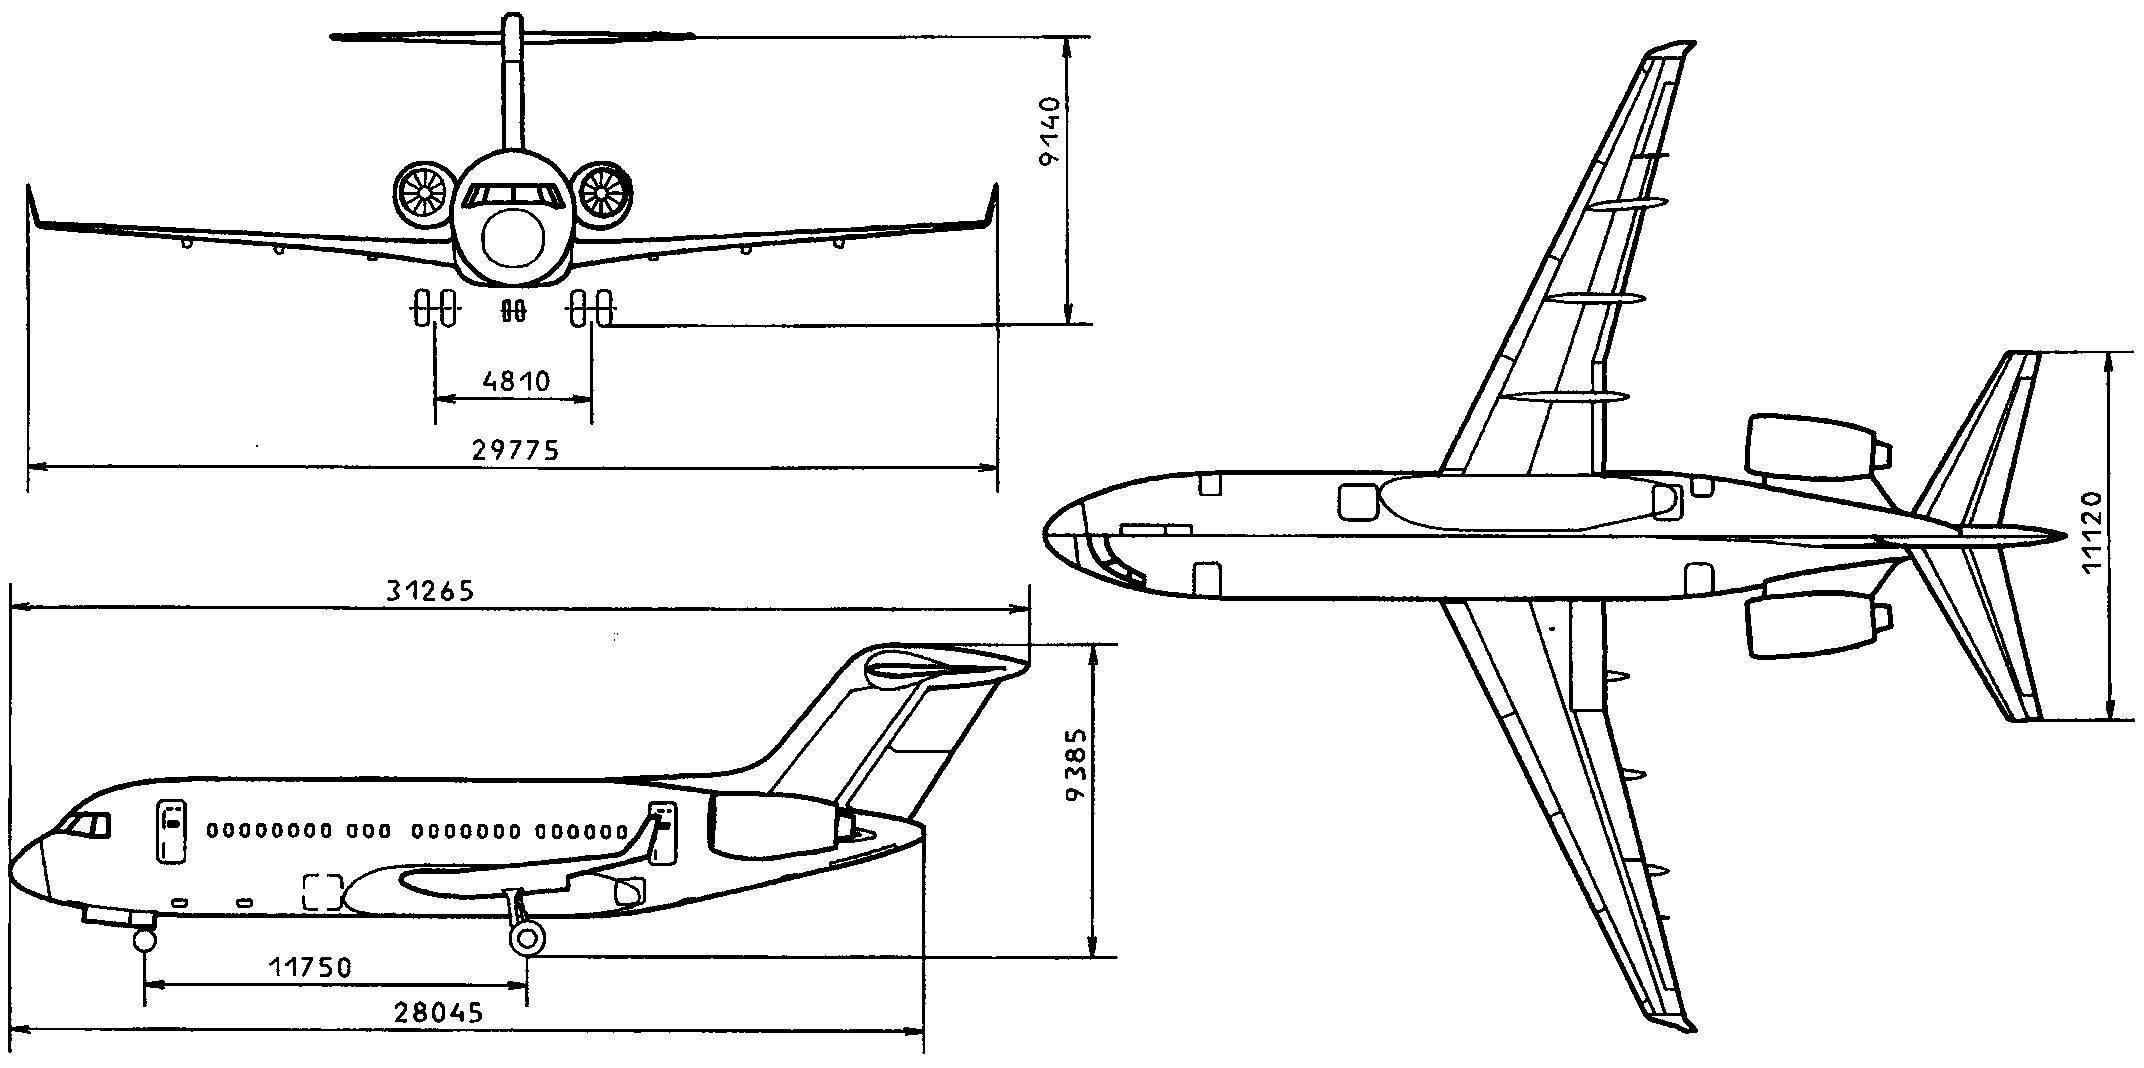 Пассажирский лайнер як-40: история создания, описание и характеристики